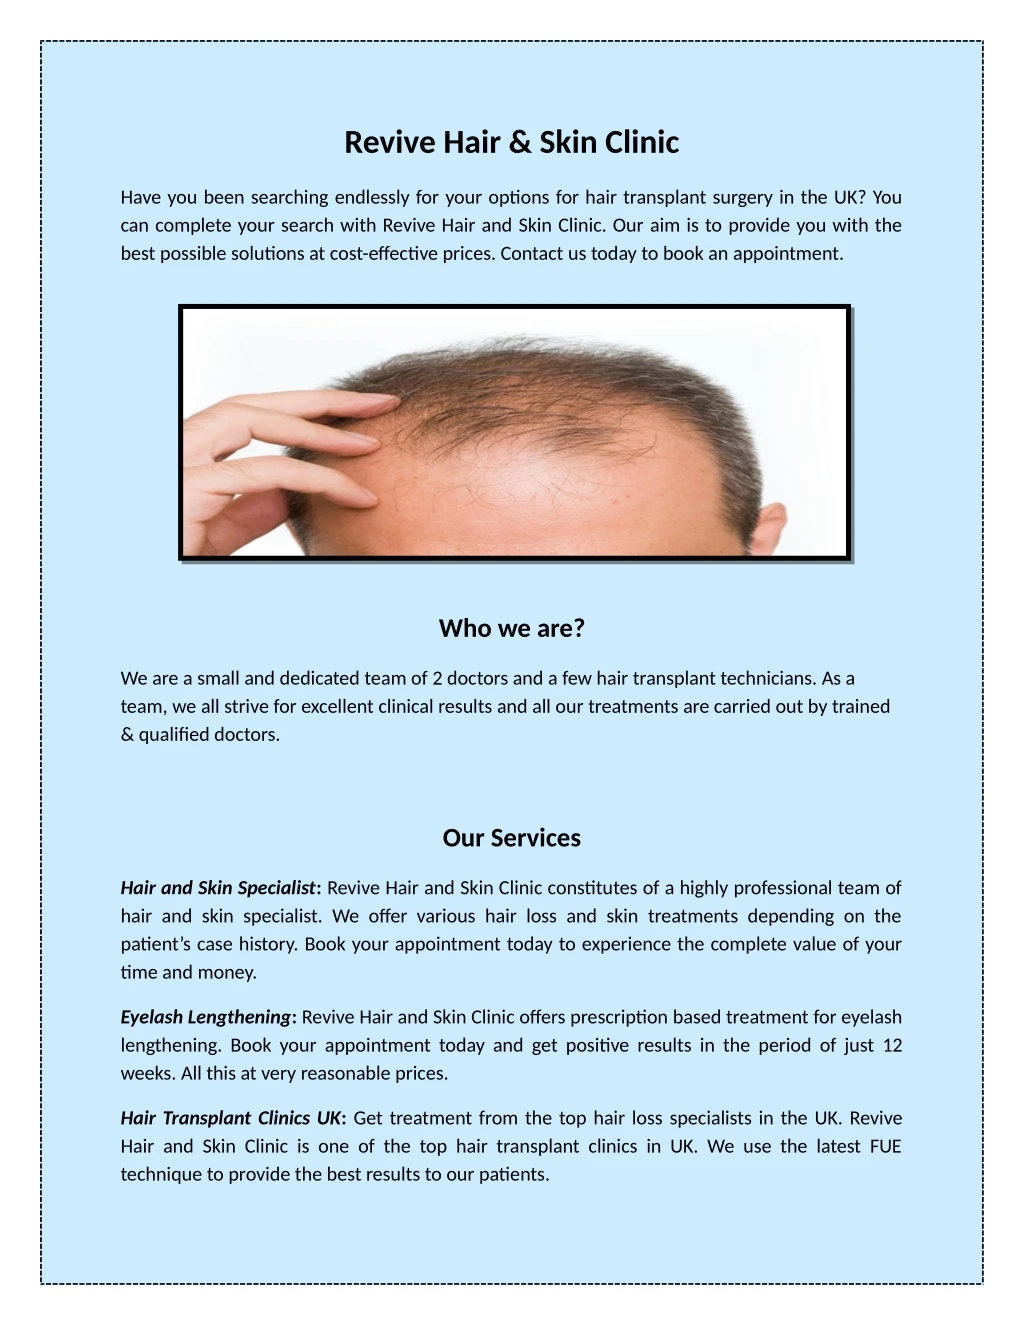 revive hair skin clinic n.